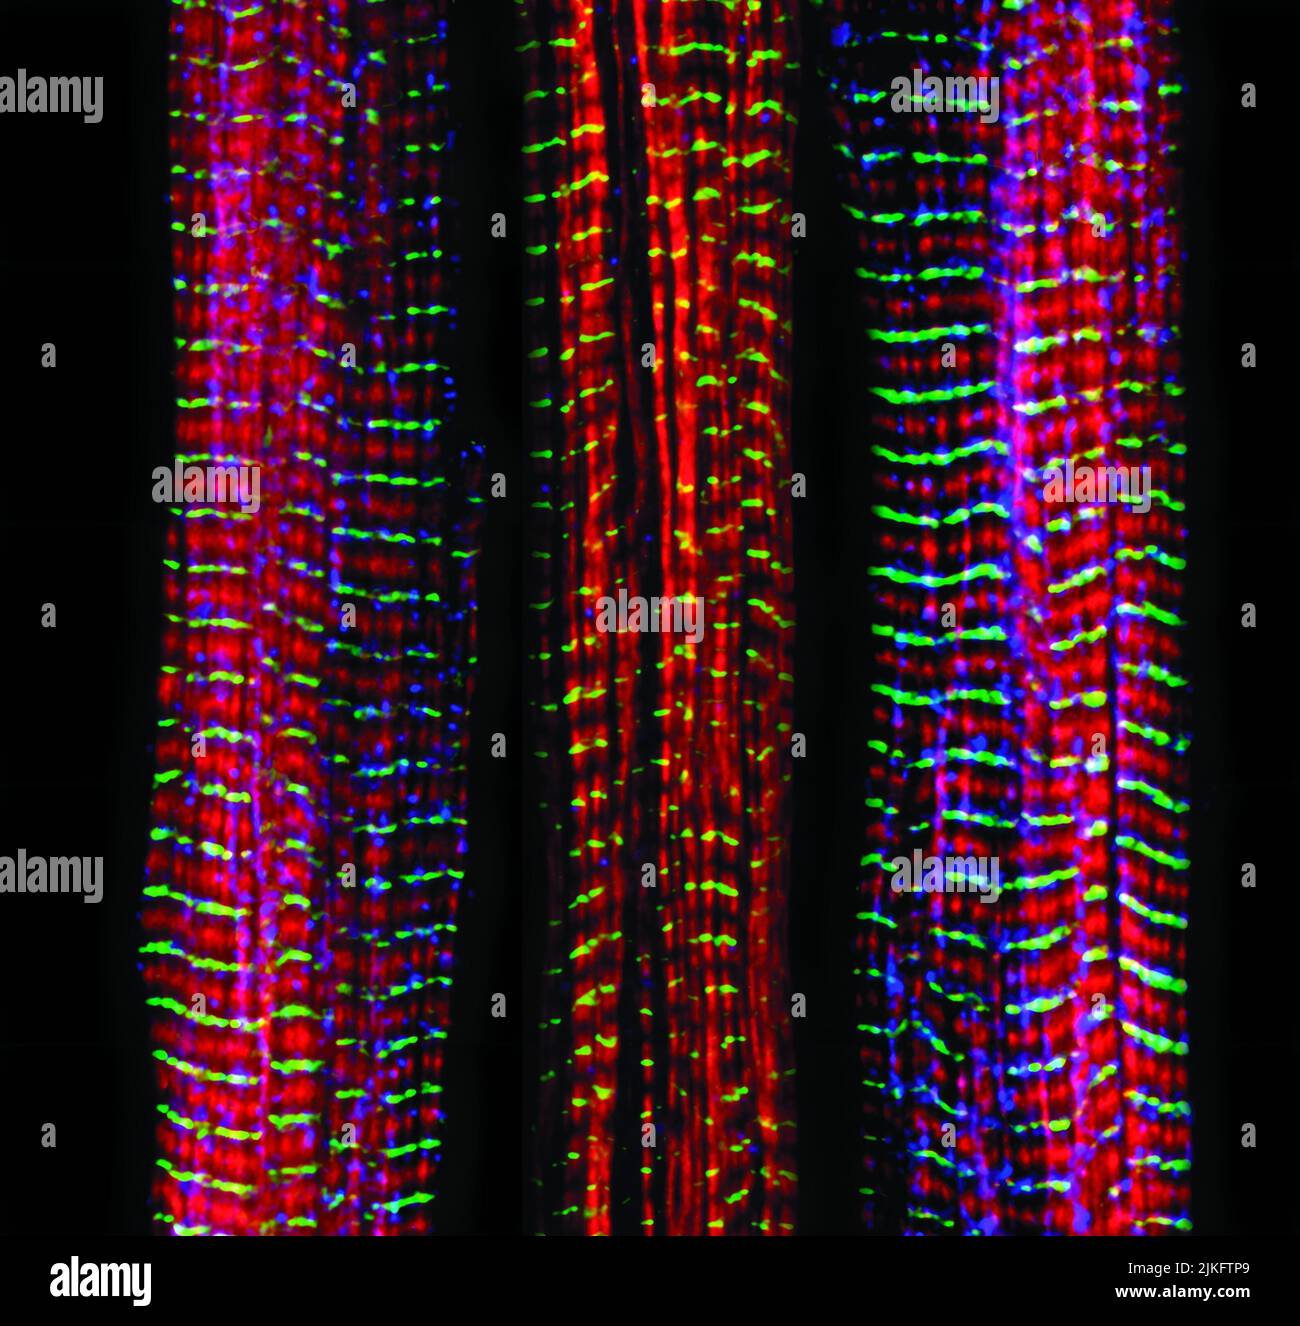 Parmi les trois fibres musculaires illustrées ici, celle de droite et celle de gauche sont normales. La fibre moyenne est déficiente une grande protéine appelée nébuline (bleu). Nebulin joue un certain nombre de rôles dans la structure et la fonction des muscles, et son absence est associée à certains troubles neuromusculaires. Banque D'Images